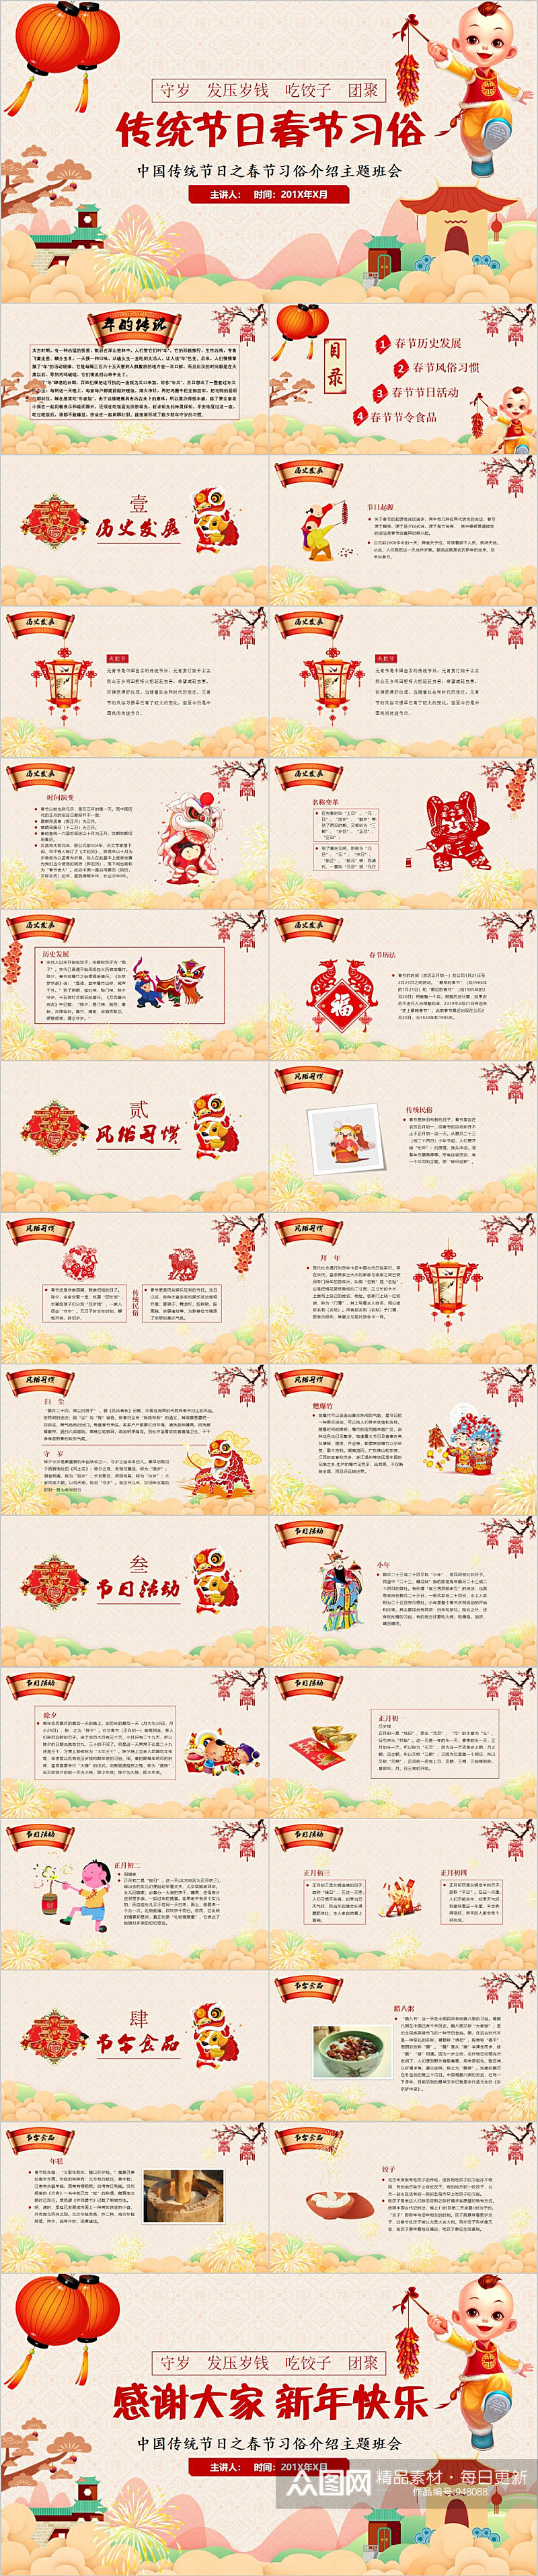 传统节日春节习俗PPT模板素材